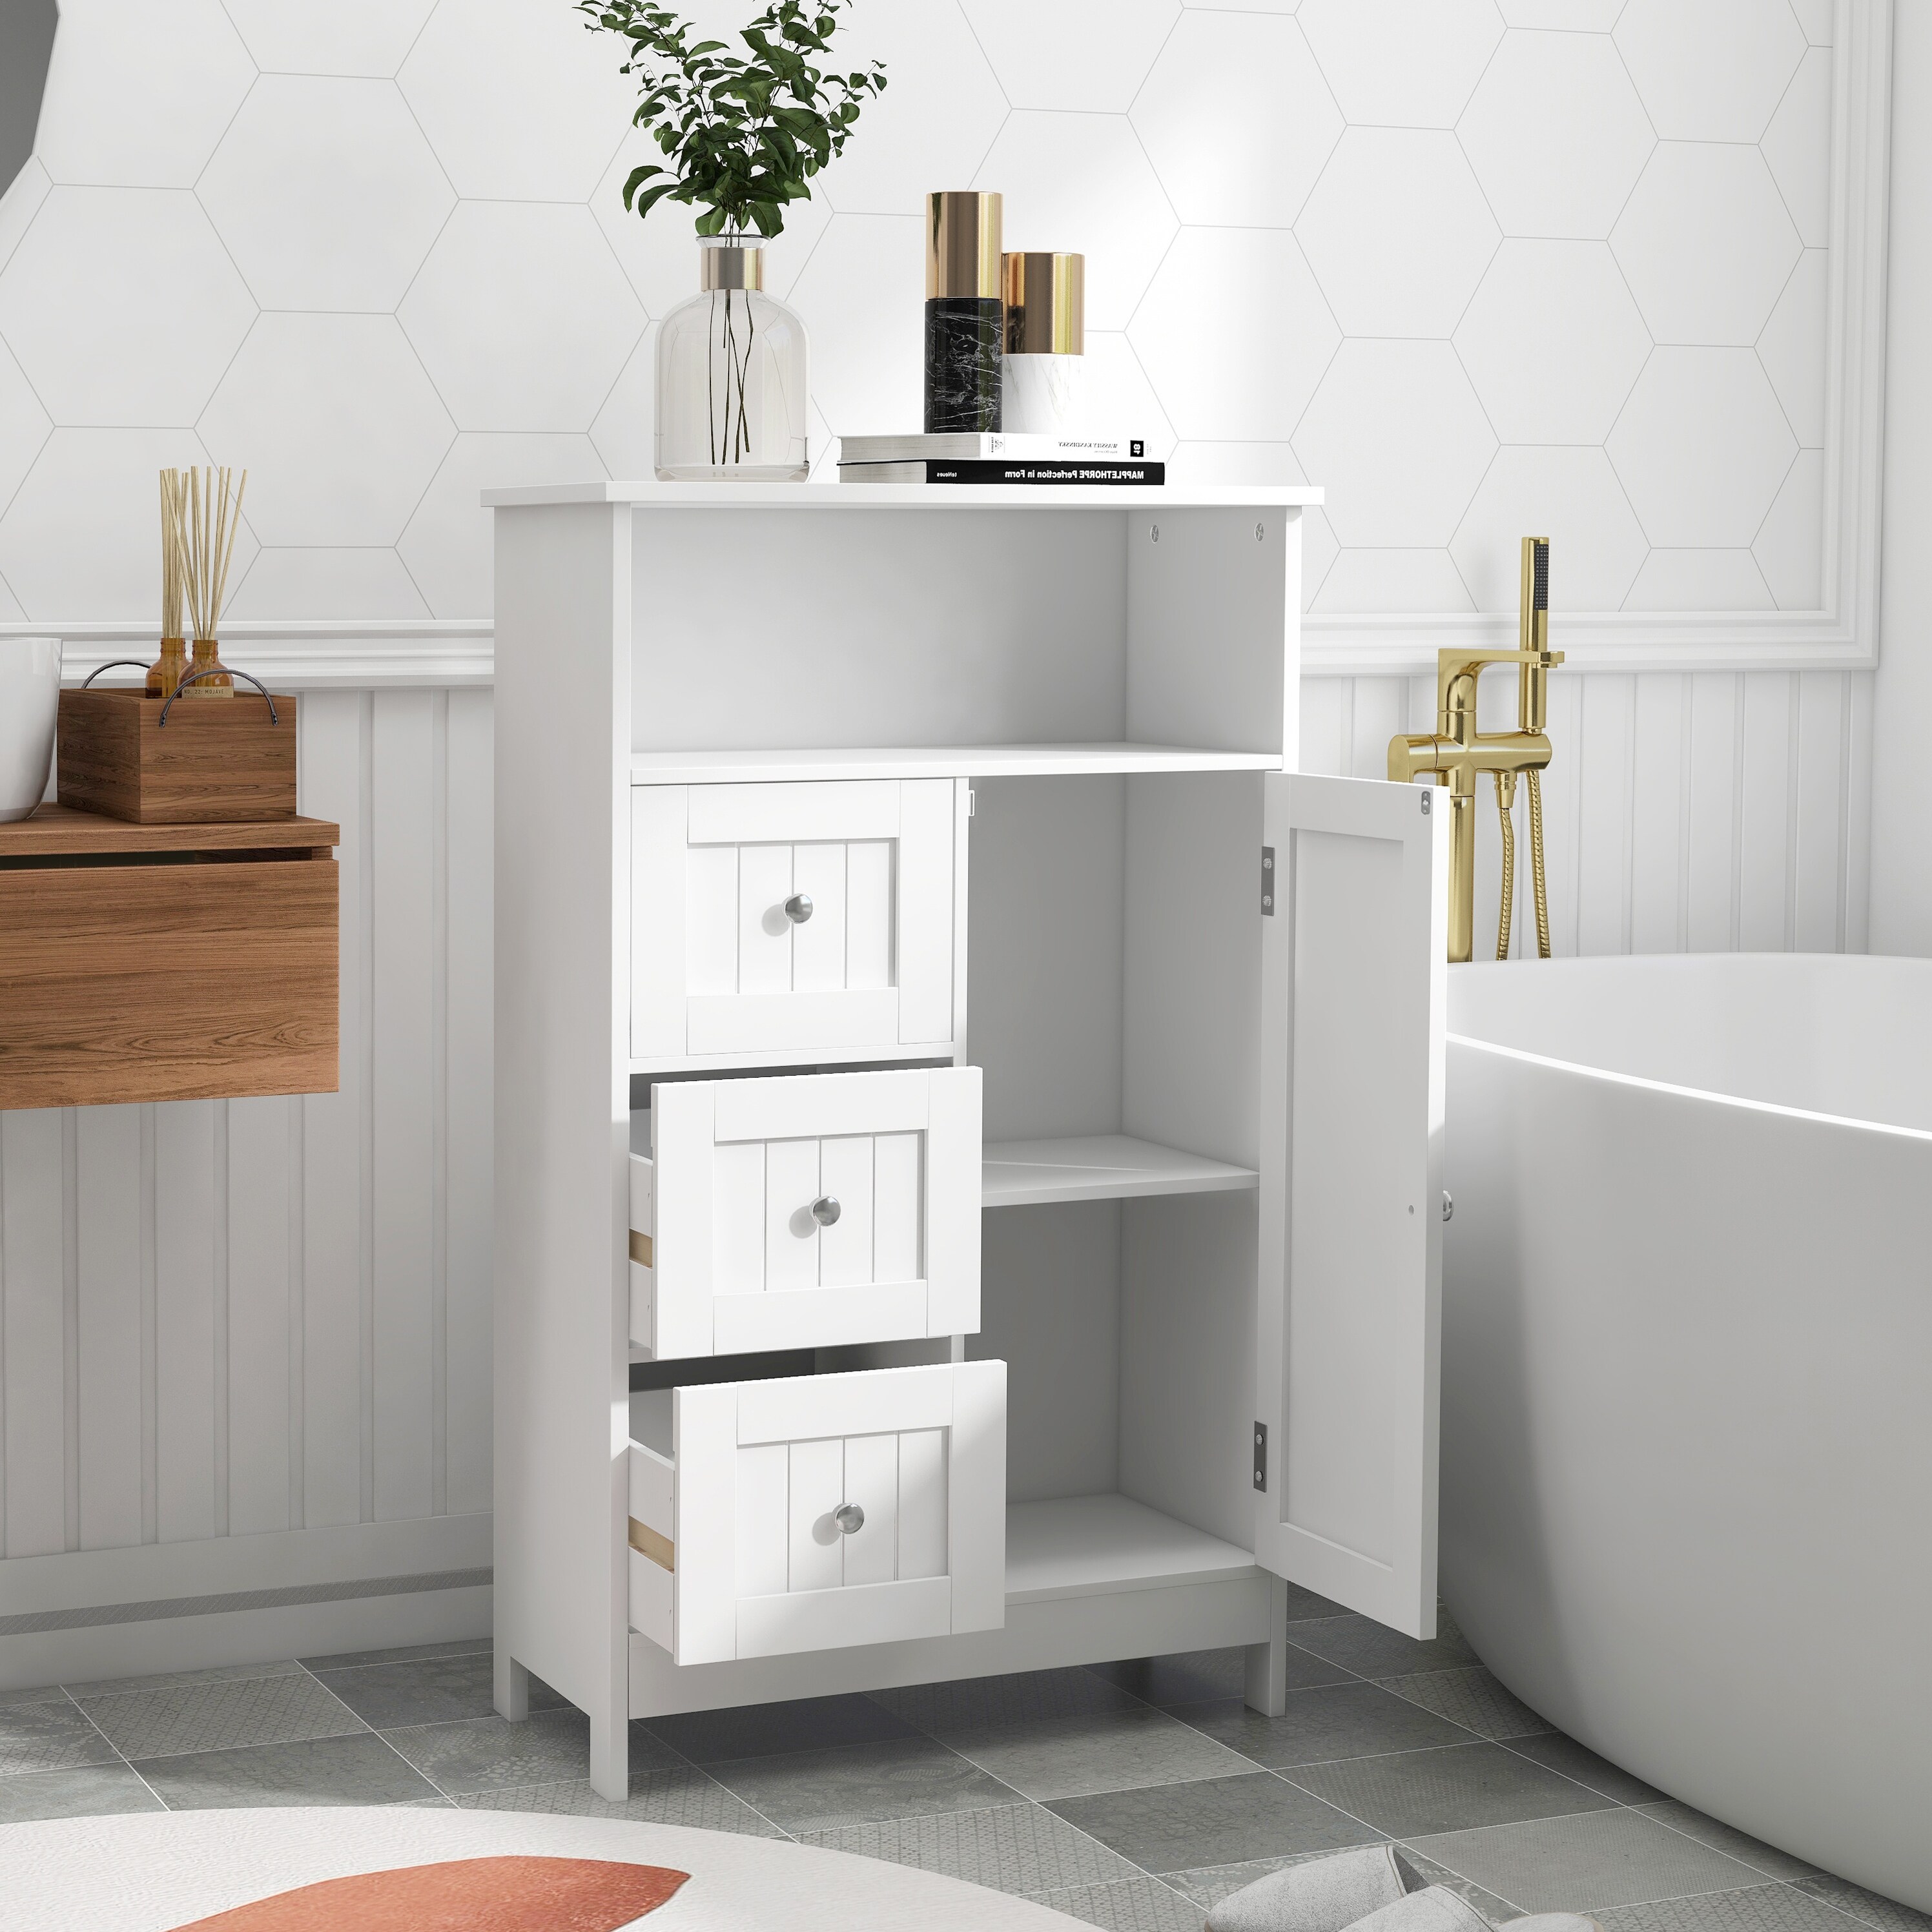 Nestfair 23.6 in. W Bathroom Floor Storage Cabinet with Adjustable